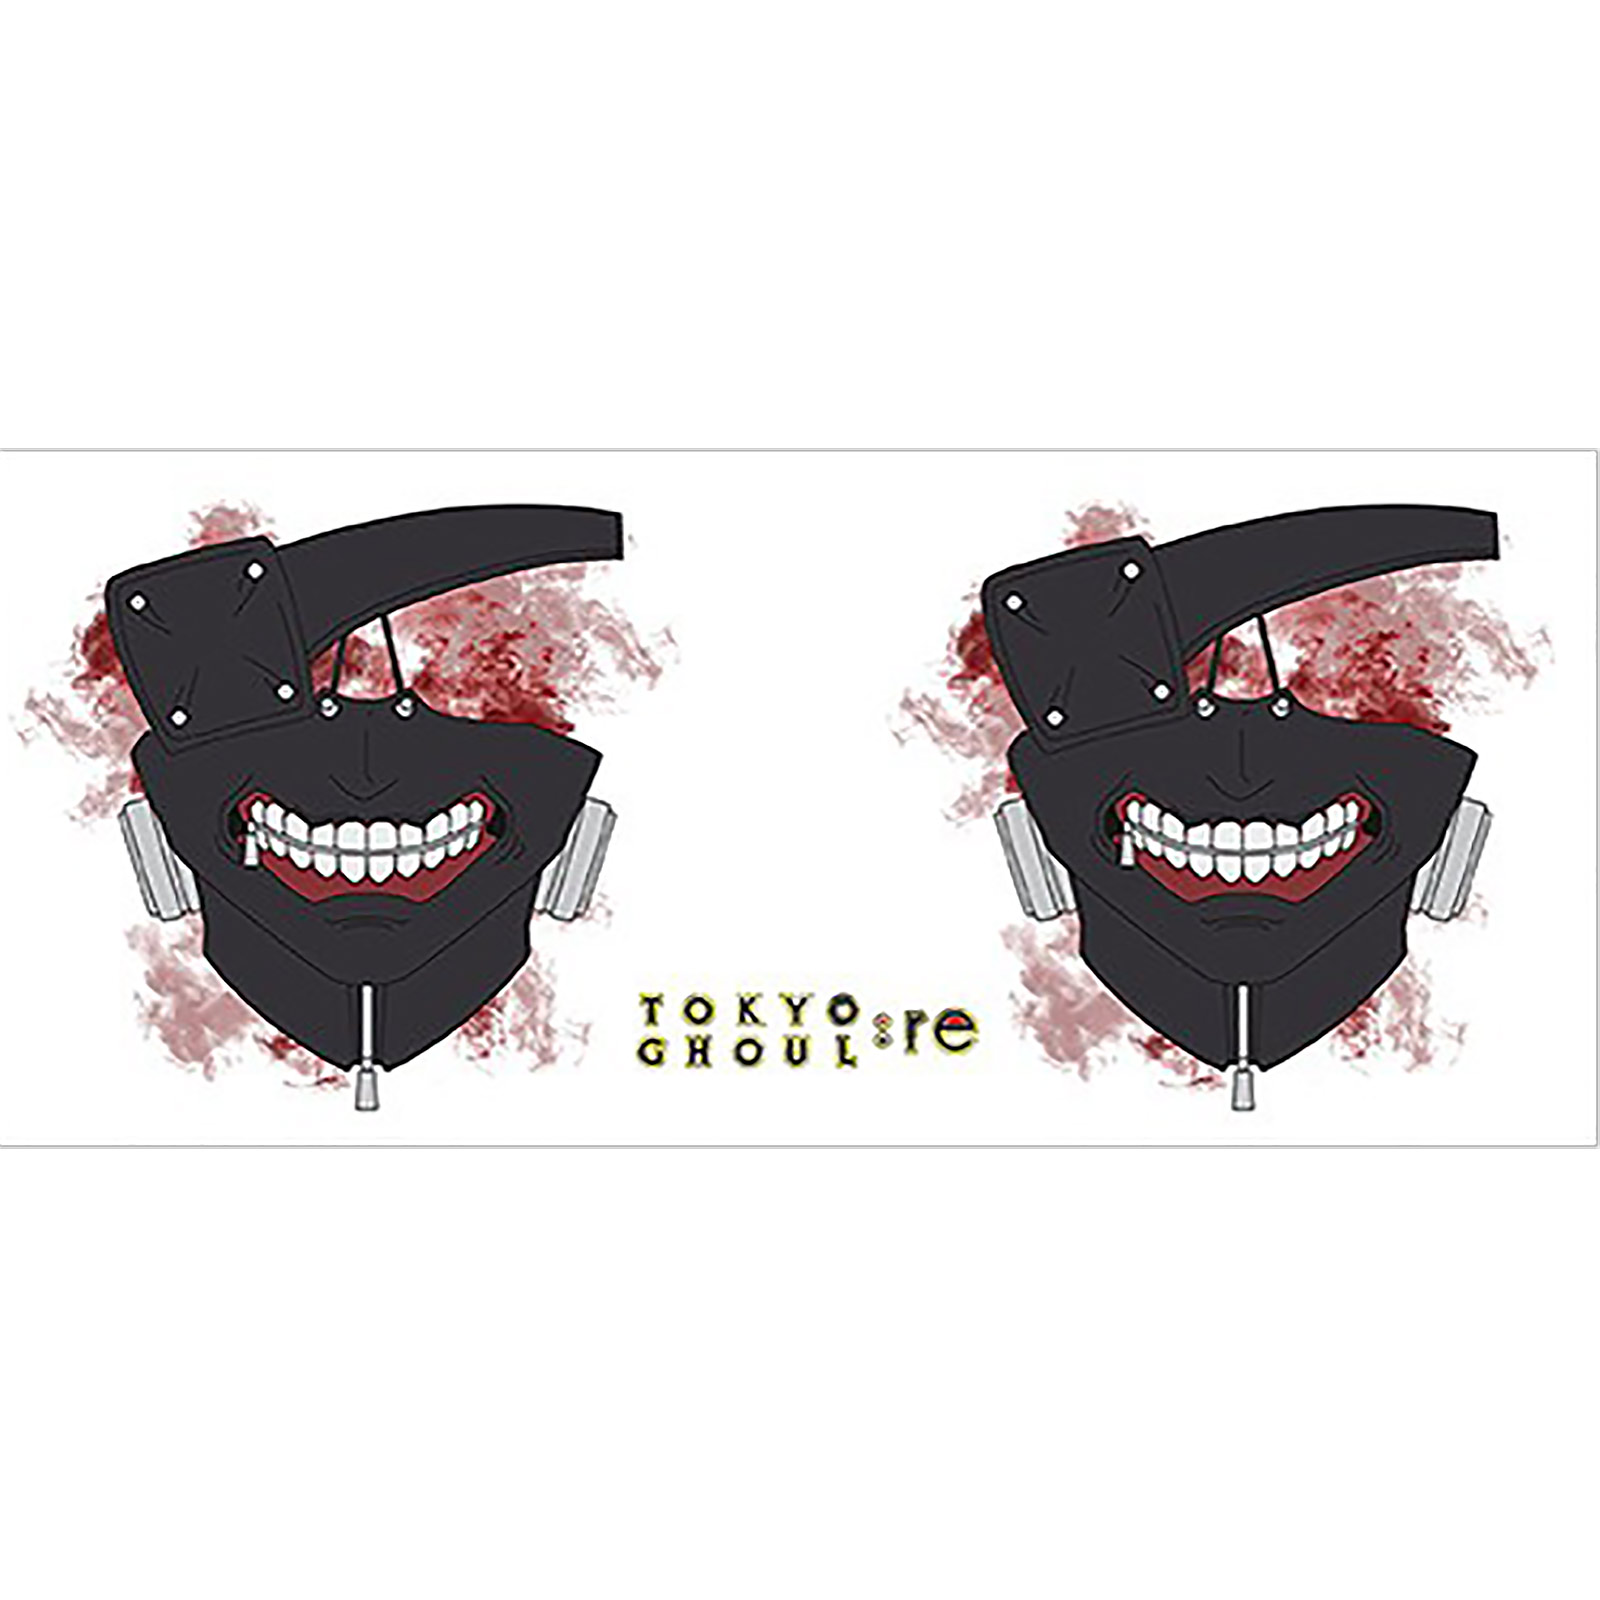 Tokyo Ghoul - Tasse Masque de Ken Kaneki